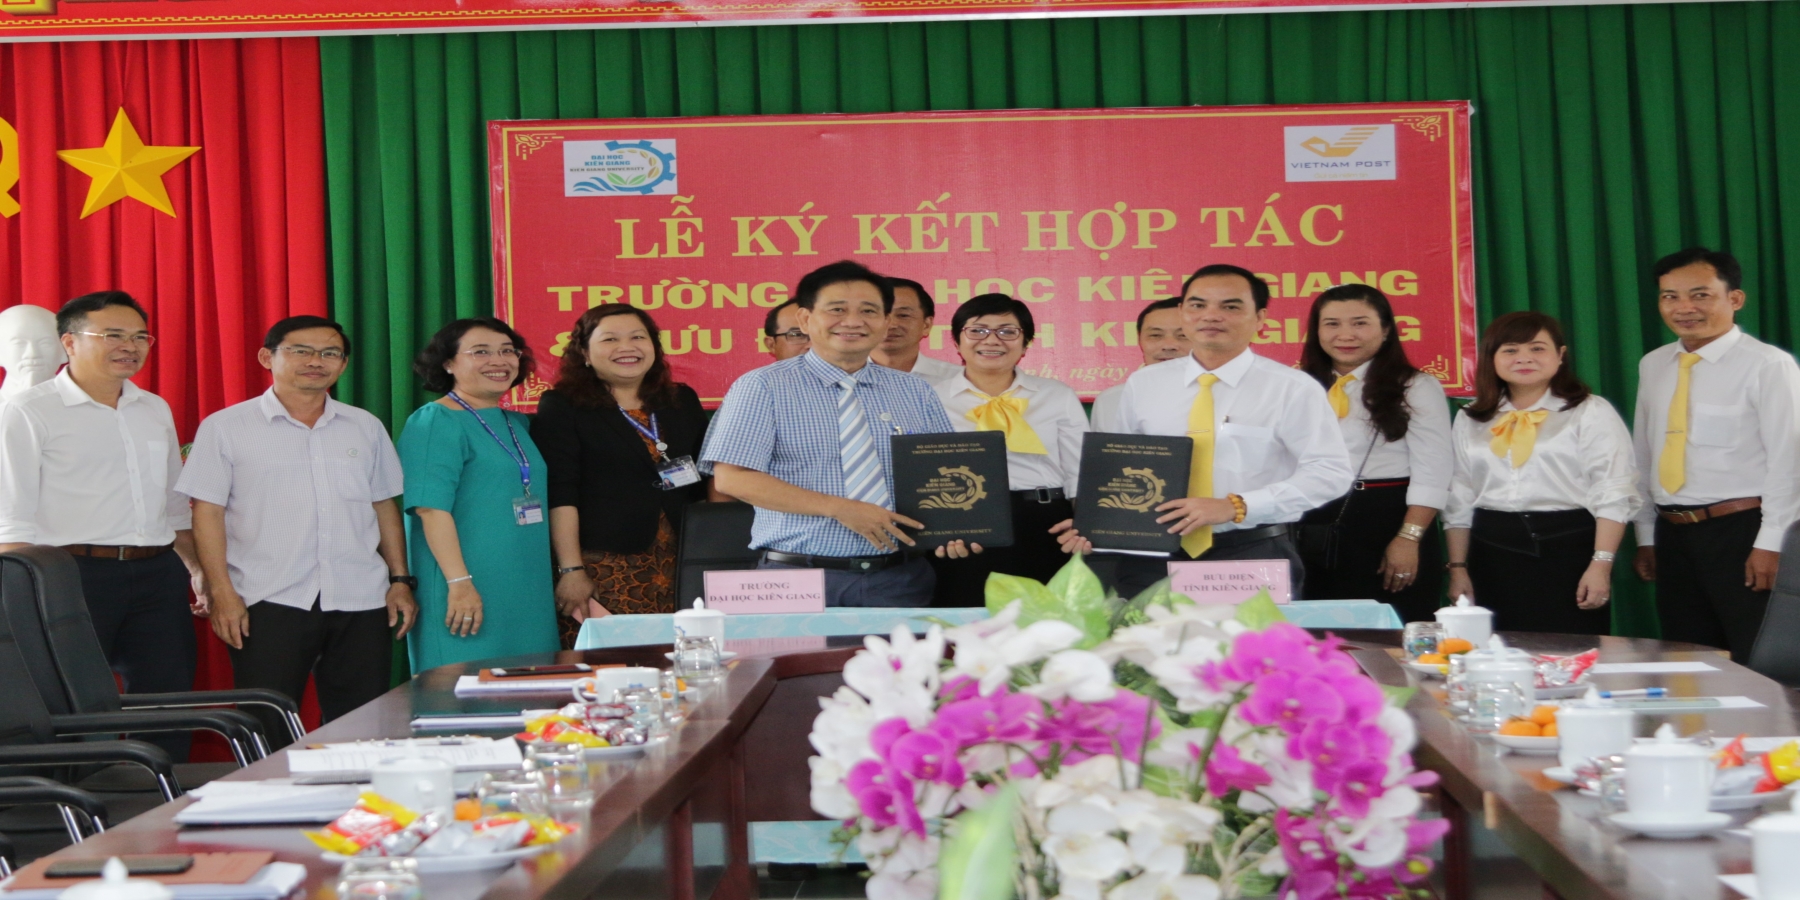 Trường Đại học Kiên Giang và Bưu điện tỉnh Kiên Giang hợp tác, hỗ trợ cùng tiến bộ